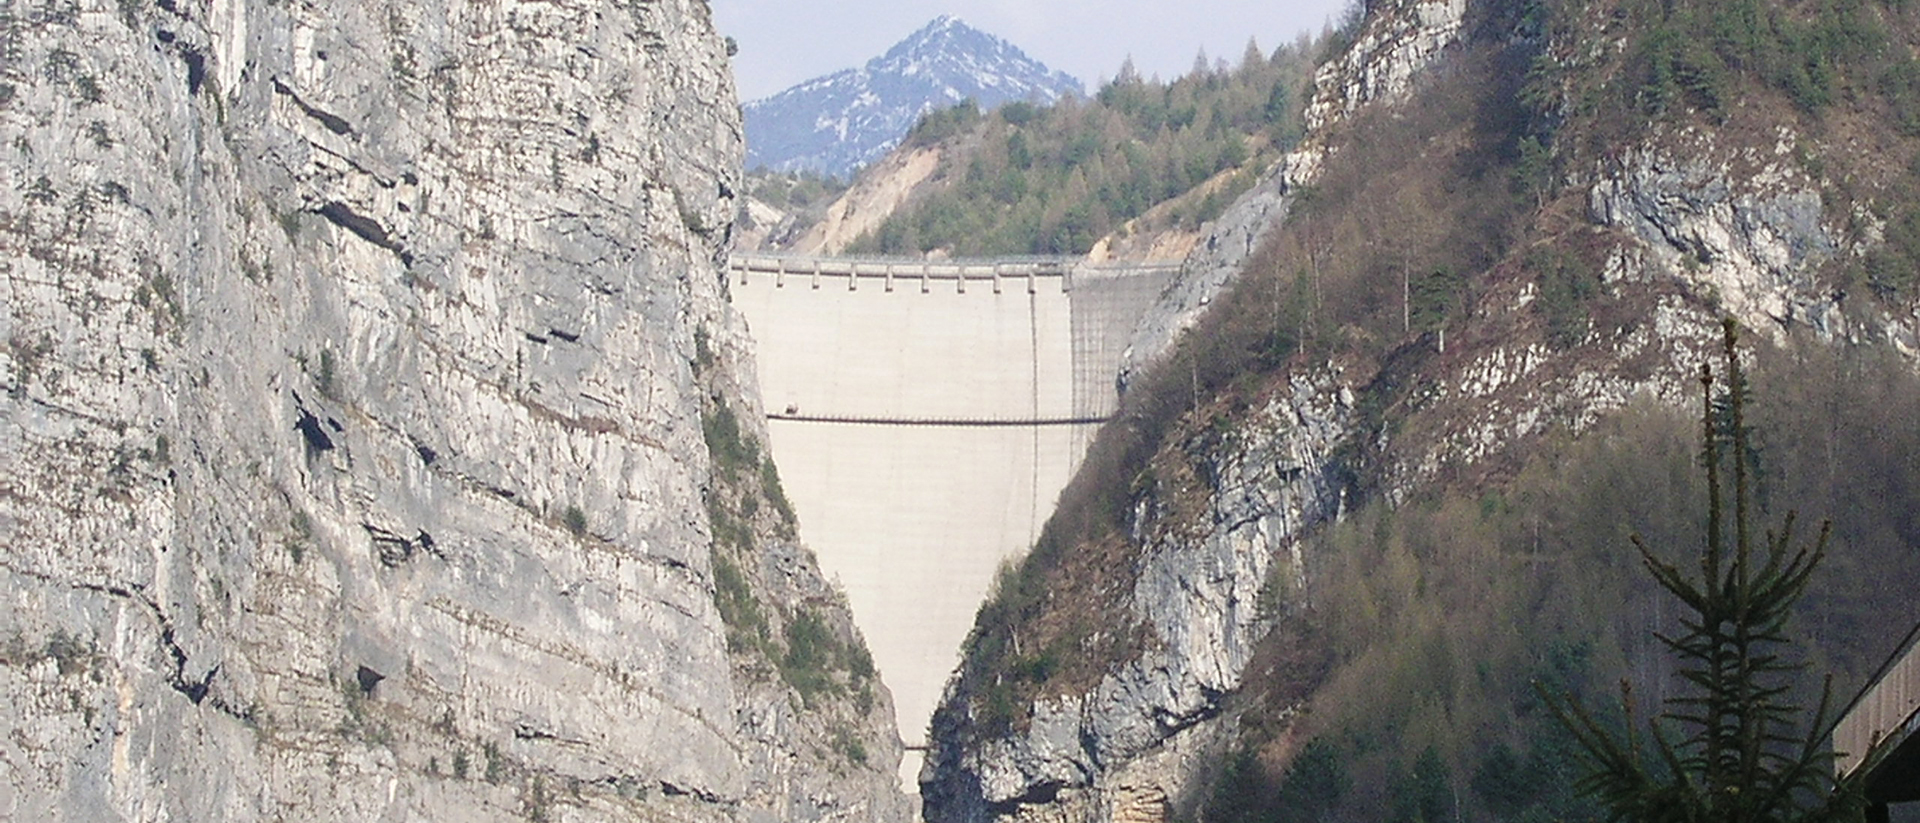 Le débordement du barrage de Vajont, en 1963, à causé la mort de près de 2'000 personnes | © 2003 – Wikimedia commons – Stefano Petri – CC BY 3.0 Deed